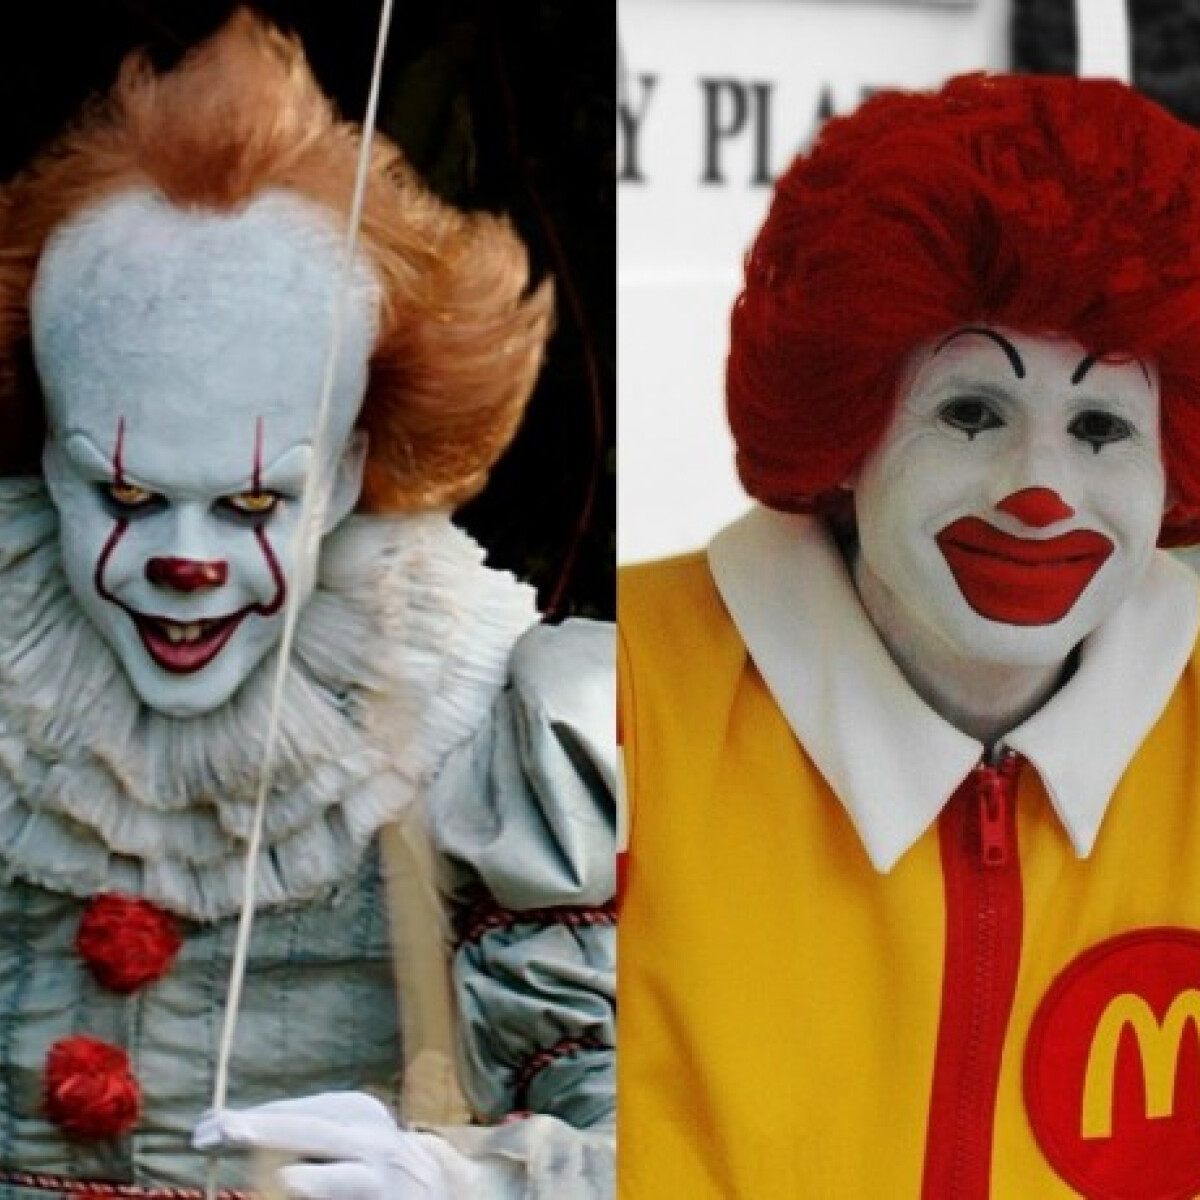 Kiakadt a Burger King, hogy Stephen King bohóca a McDonald's-nak dolgozik